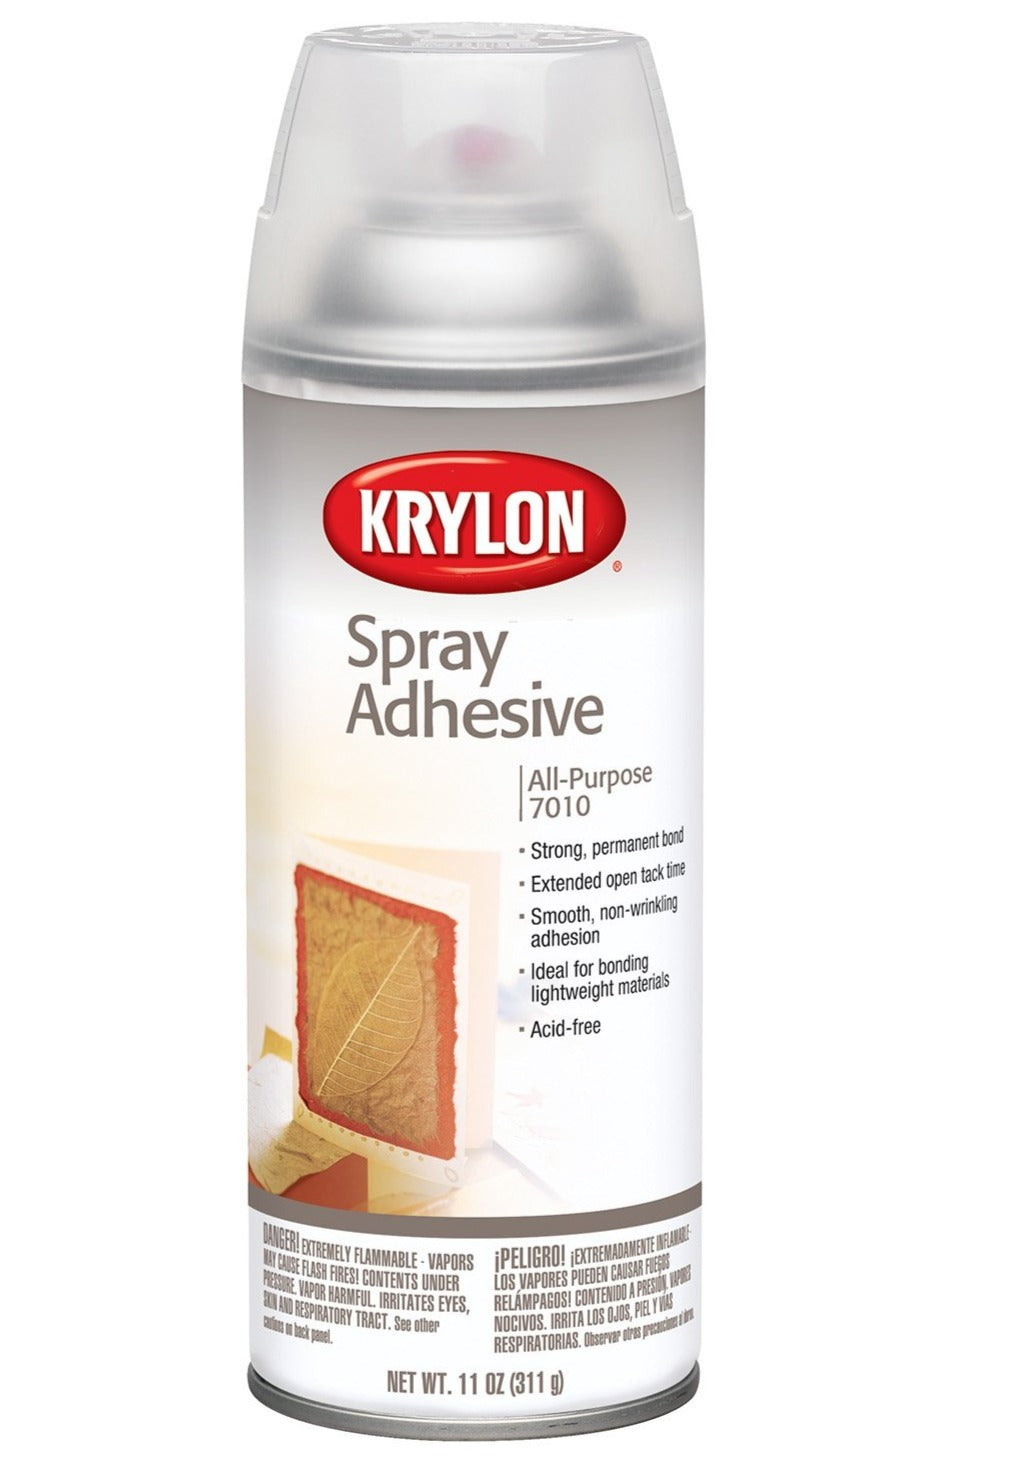 KRYLON Spray Adhesive